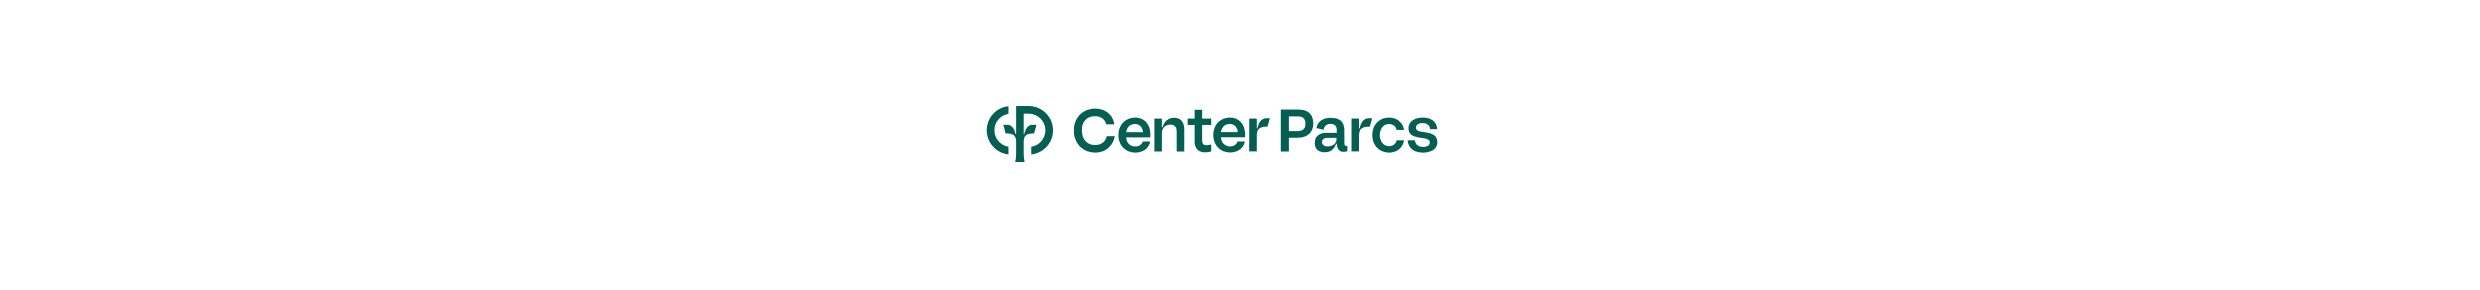 CENTER PARCS logo